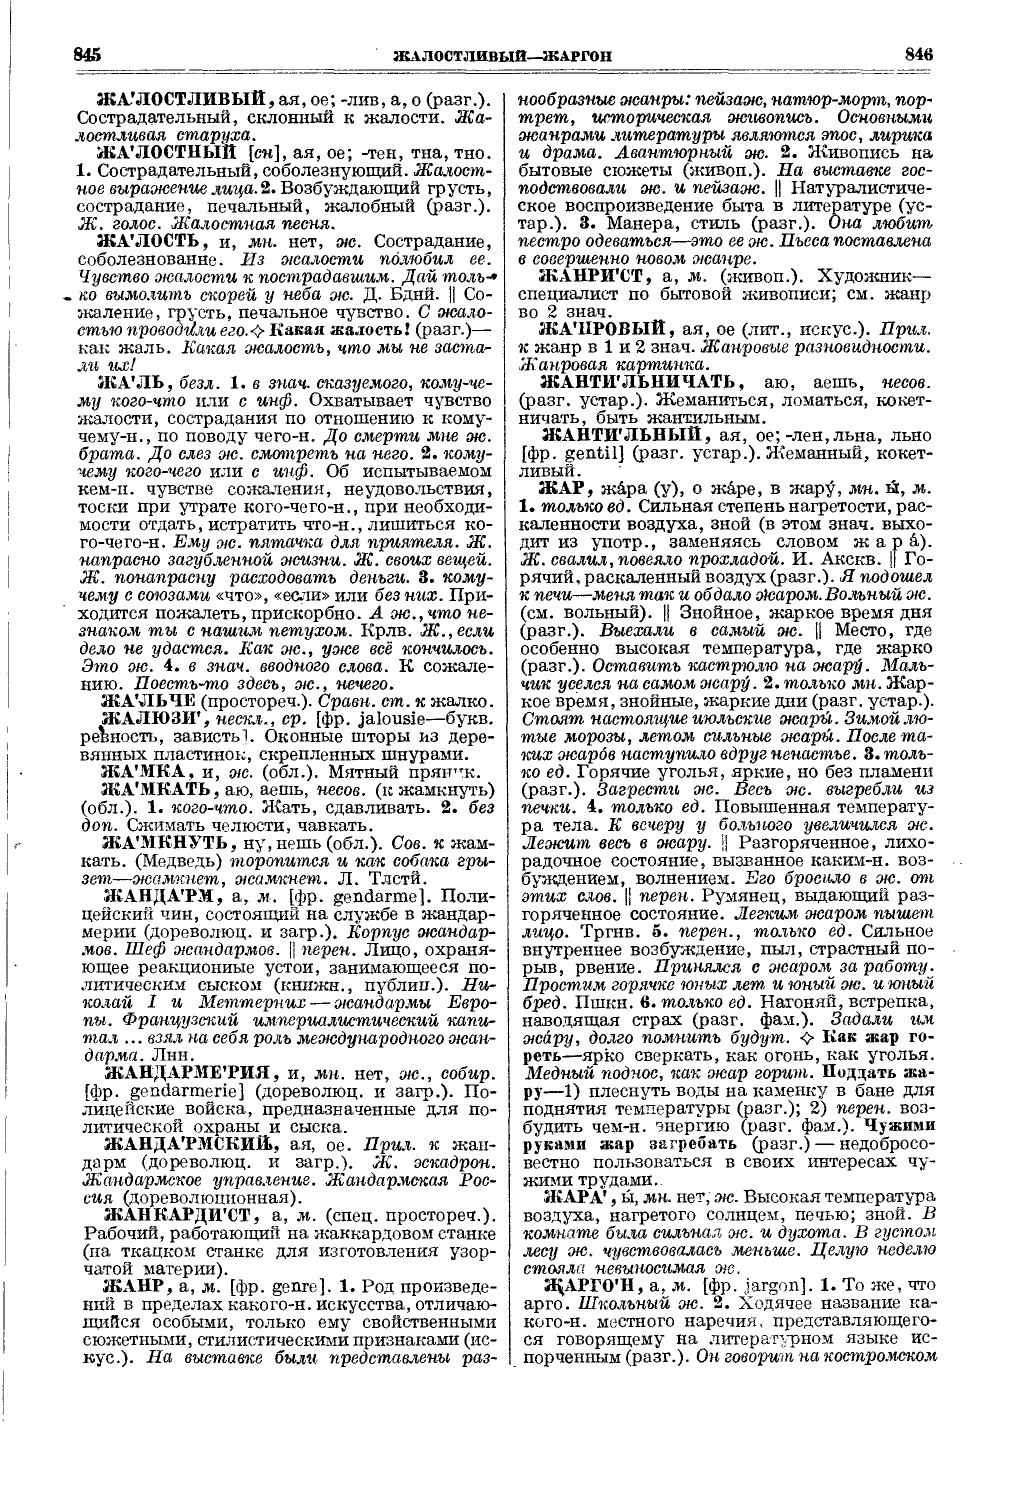 Фотокопия pdf / скан страницы 461 толкового словаря Ушакова (том 1)